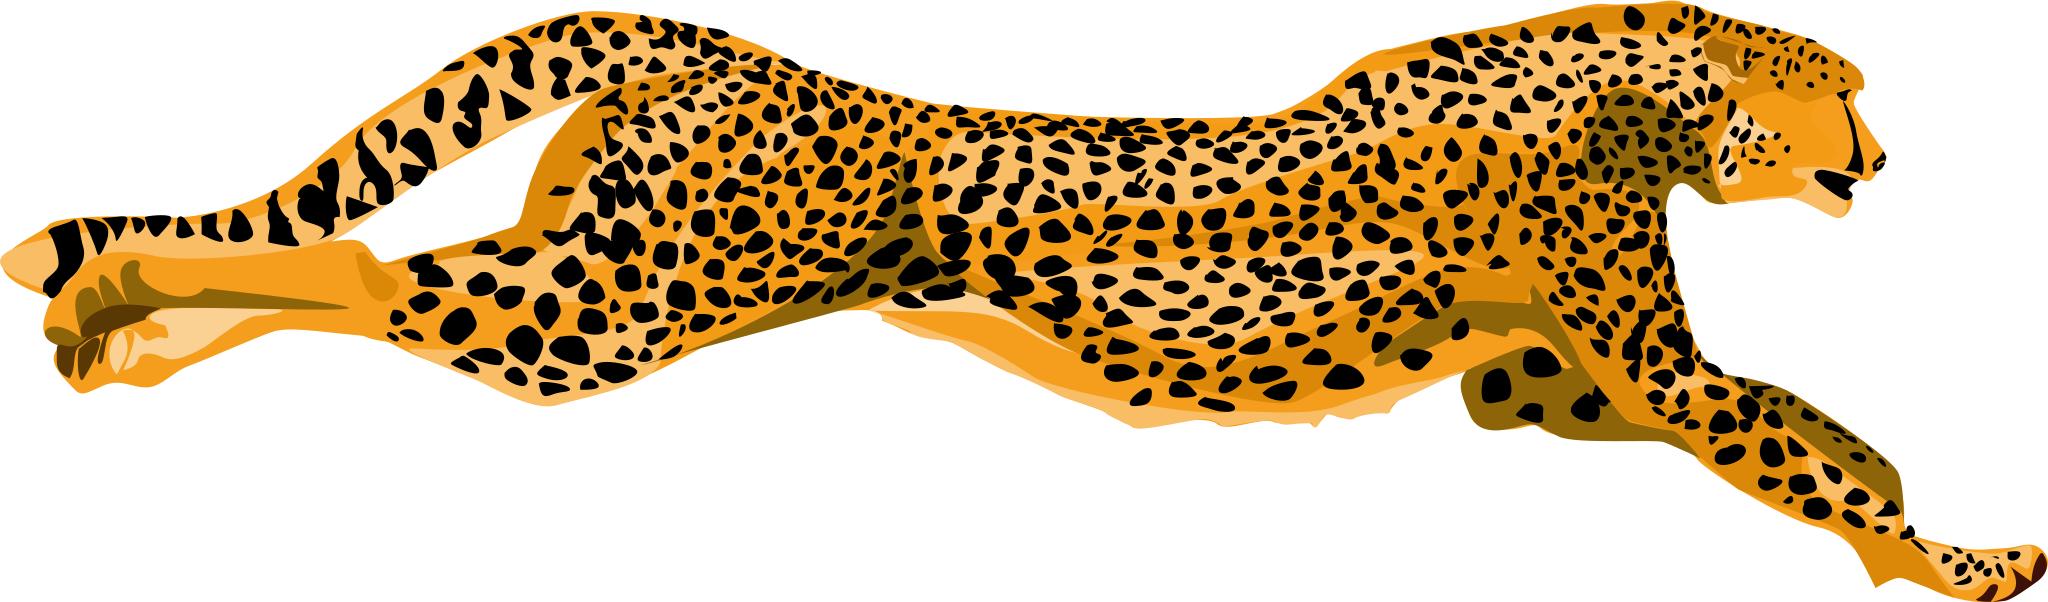 Гепард на белом фоне